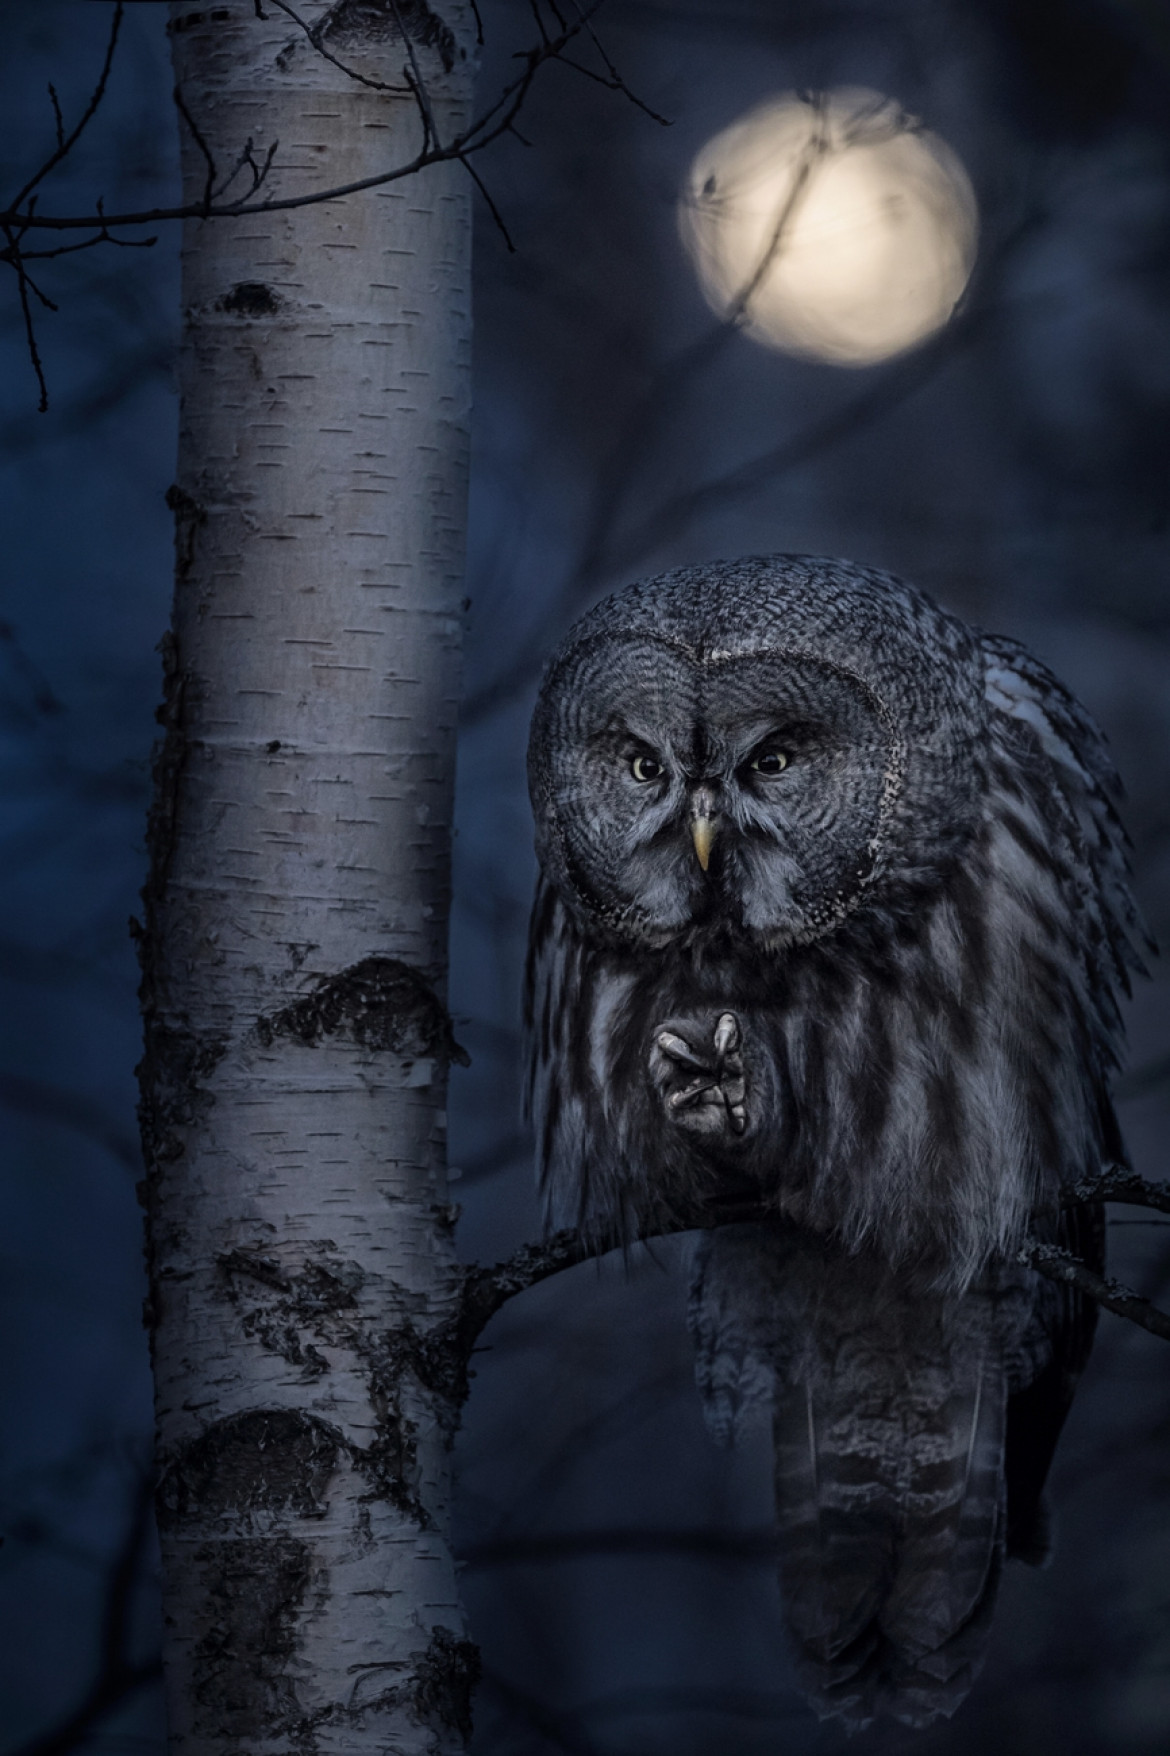 fot. Jonas Classon, "Night Hunter", 1. miejsce w kat. Animals in their Environment / Siena International Photo Awards 2020<br></br> Sowa szara podczas polowania